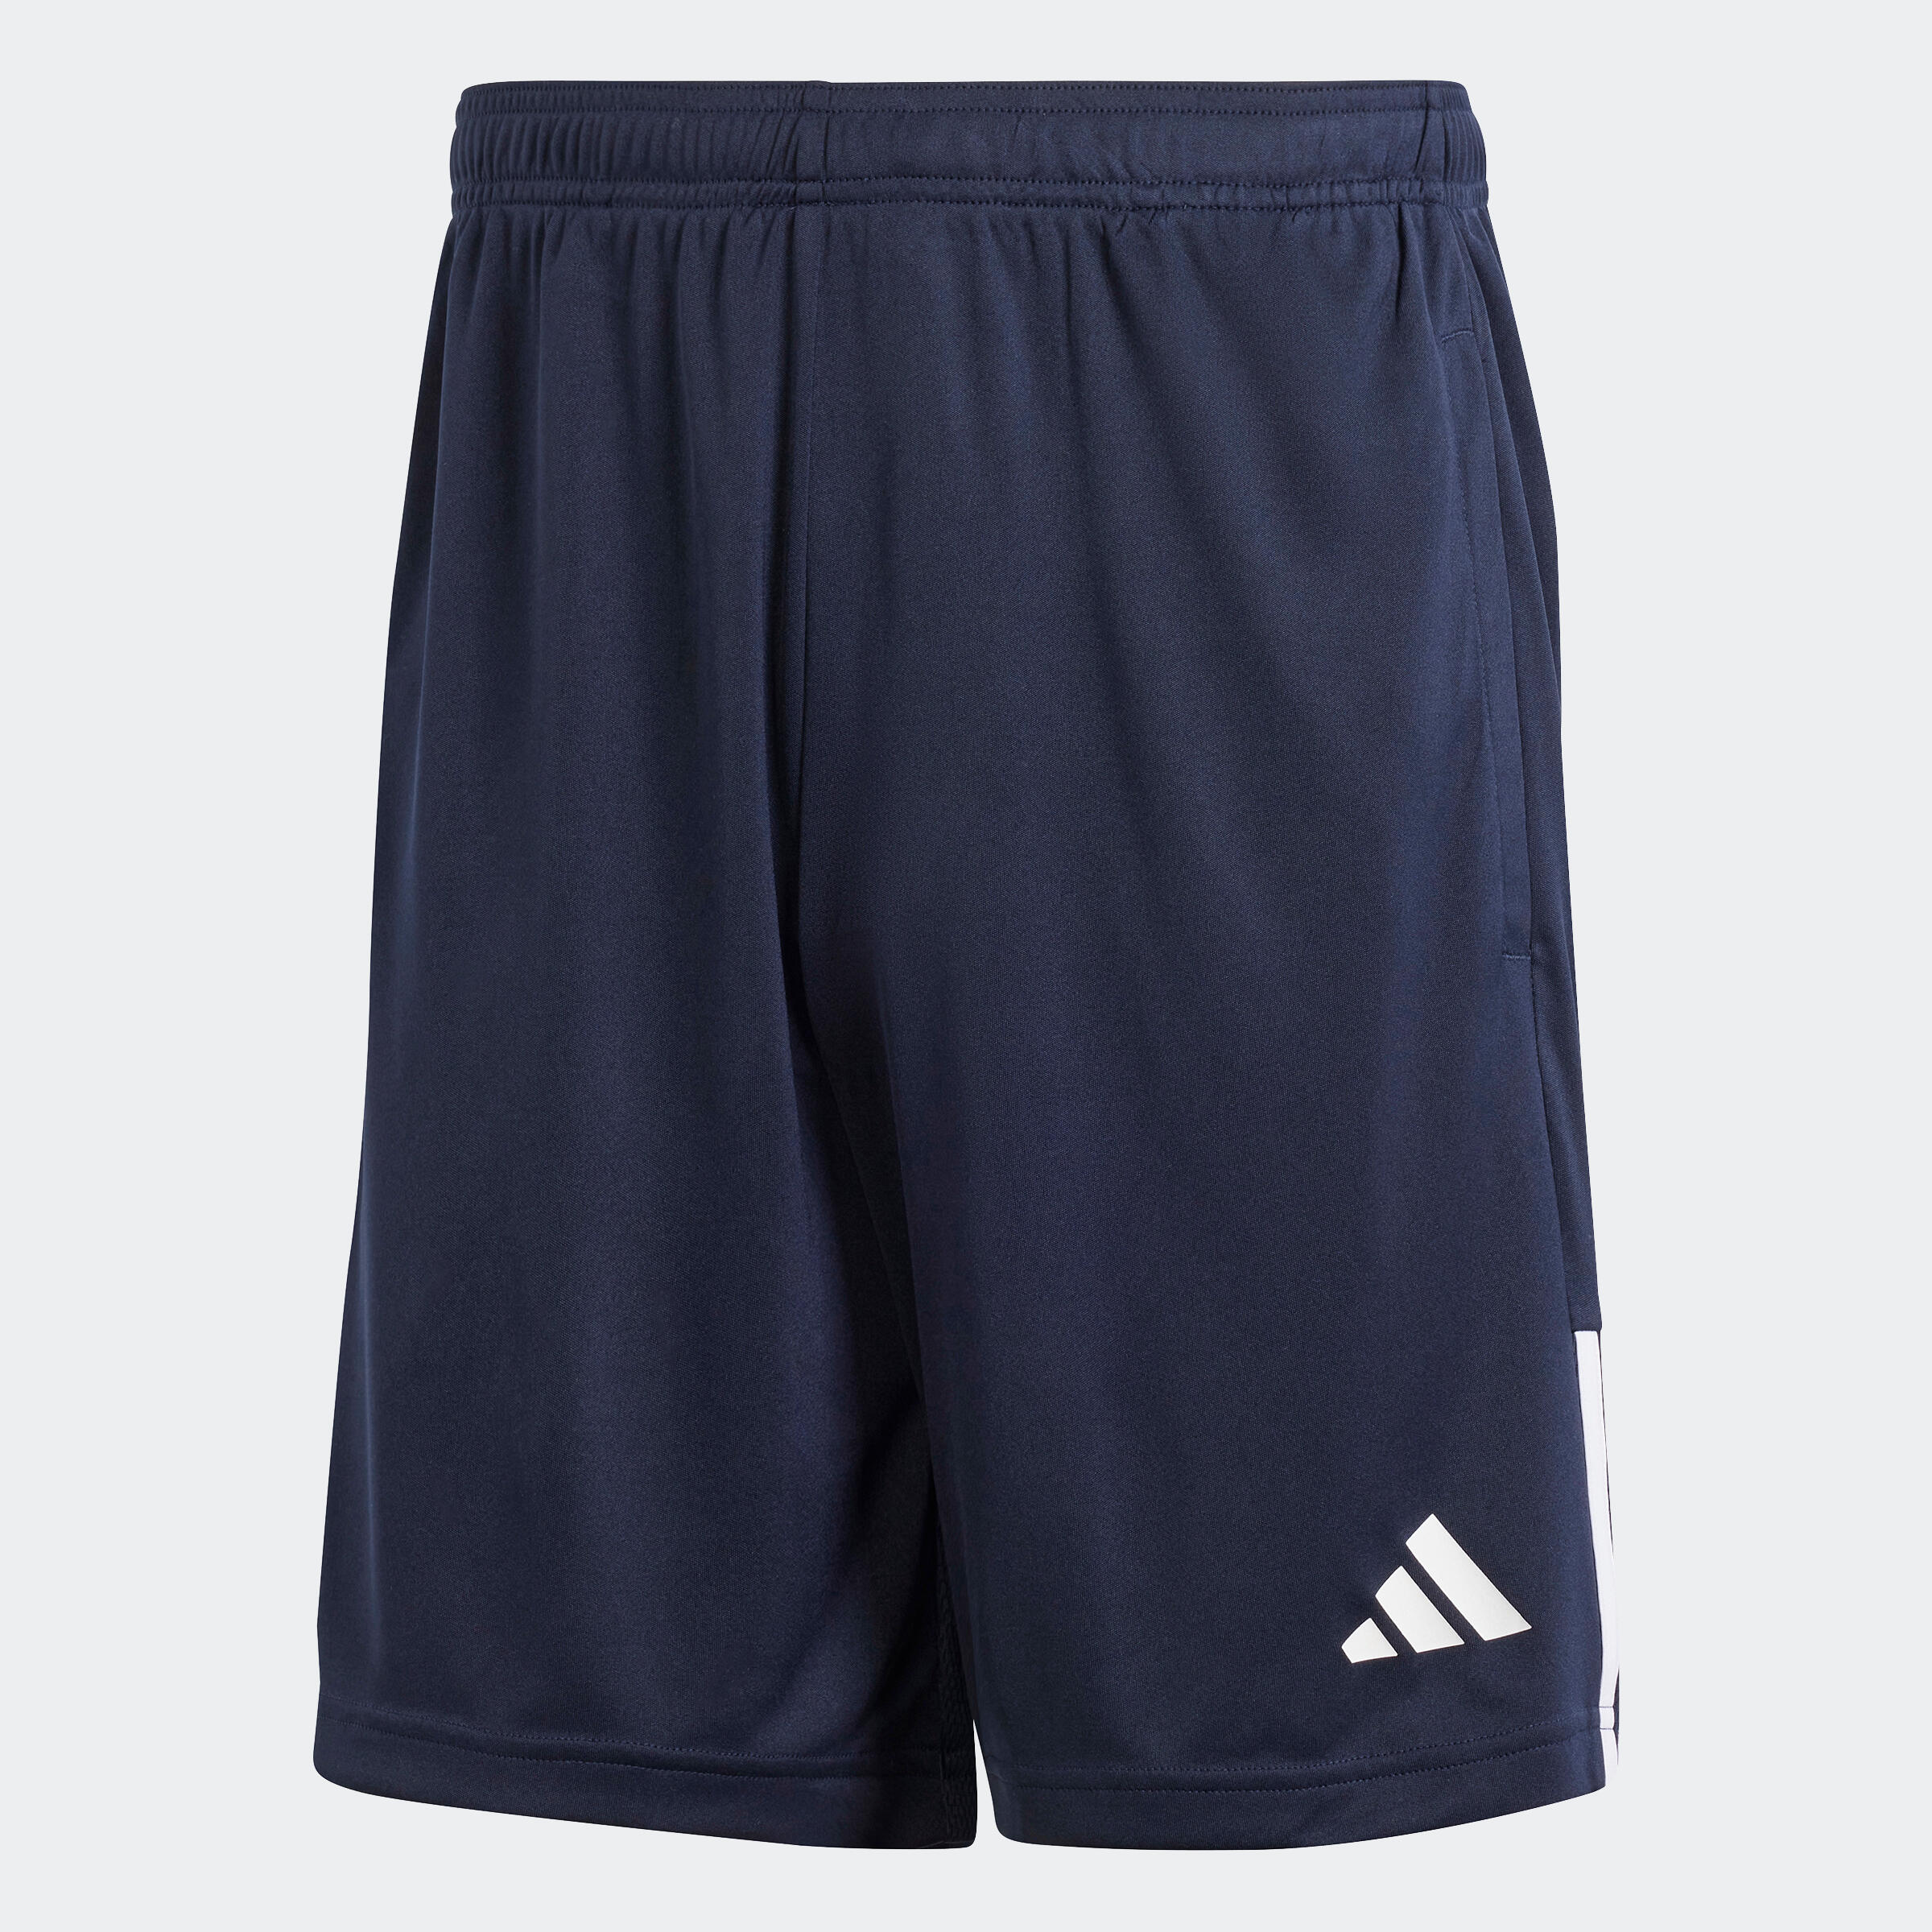 ADIDAS Adult Football Shorts Sereno - Navy Blue